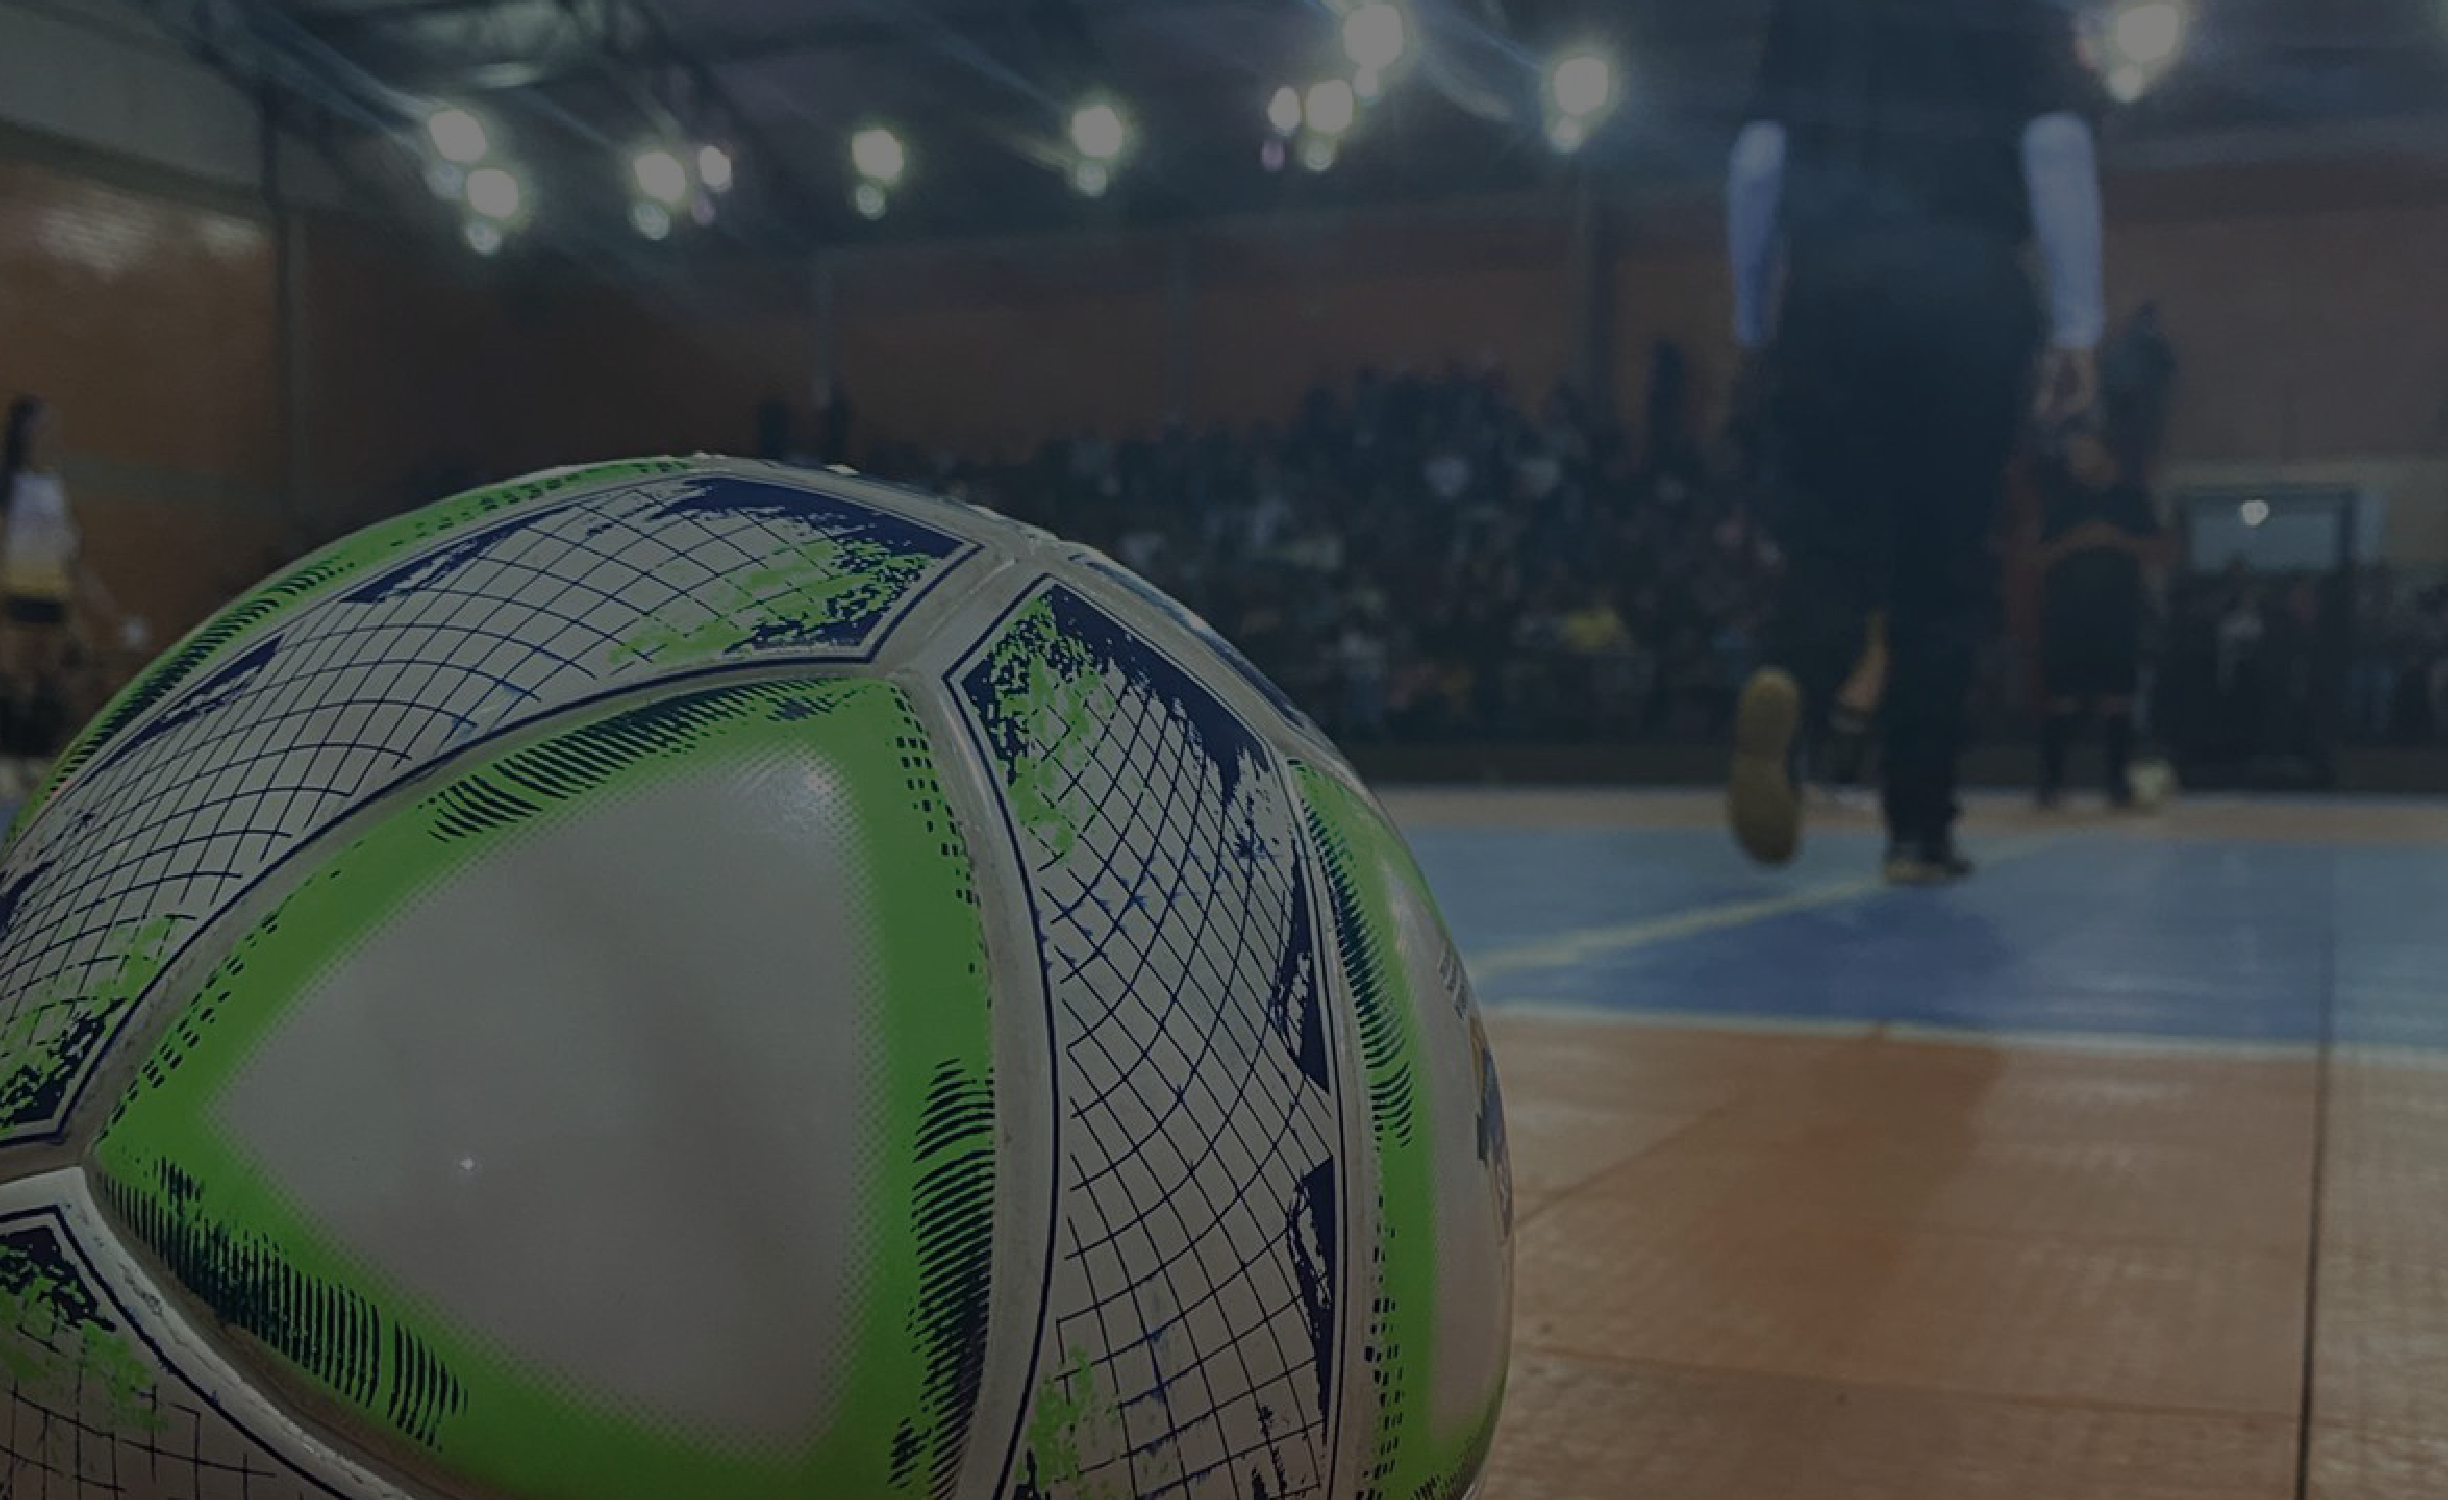 Gerência de Esportes realizou com sucesso o 1º Torneio de Pênaltis de Futsal